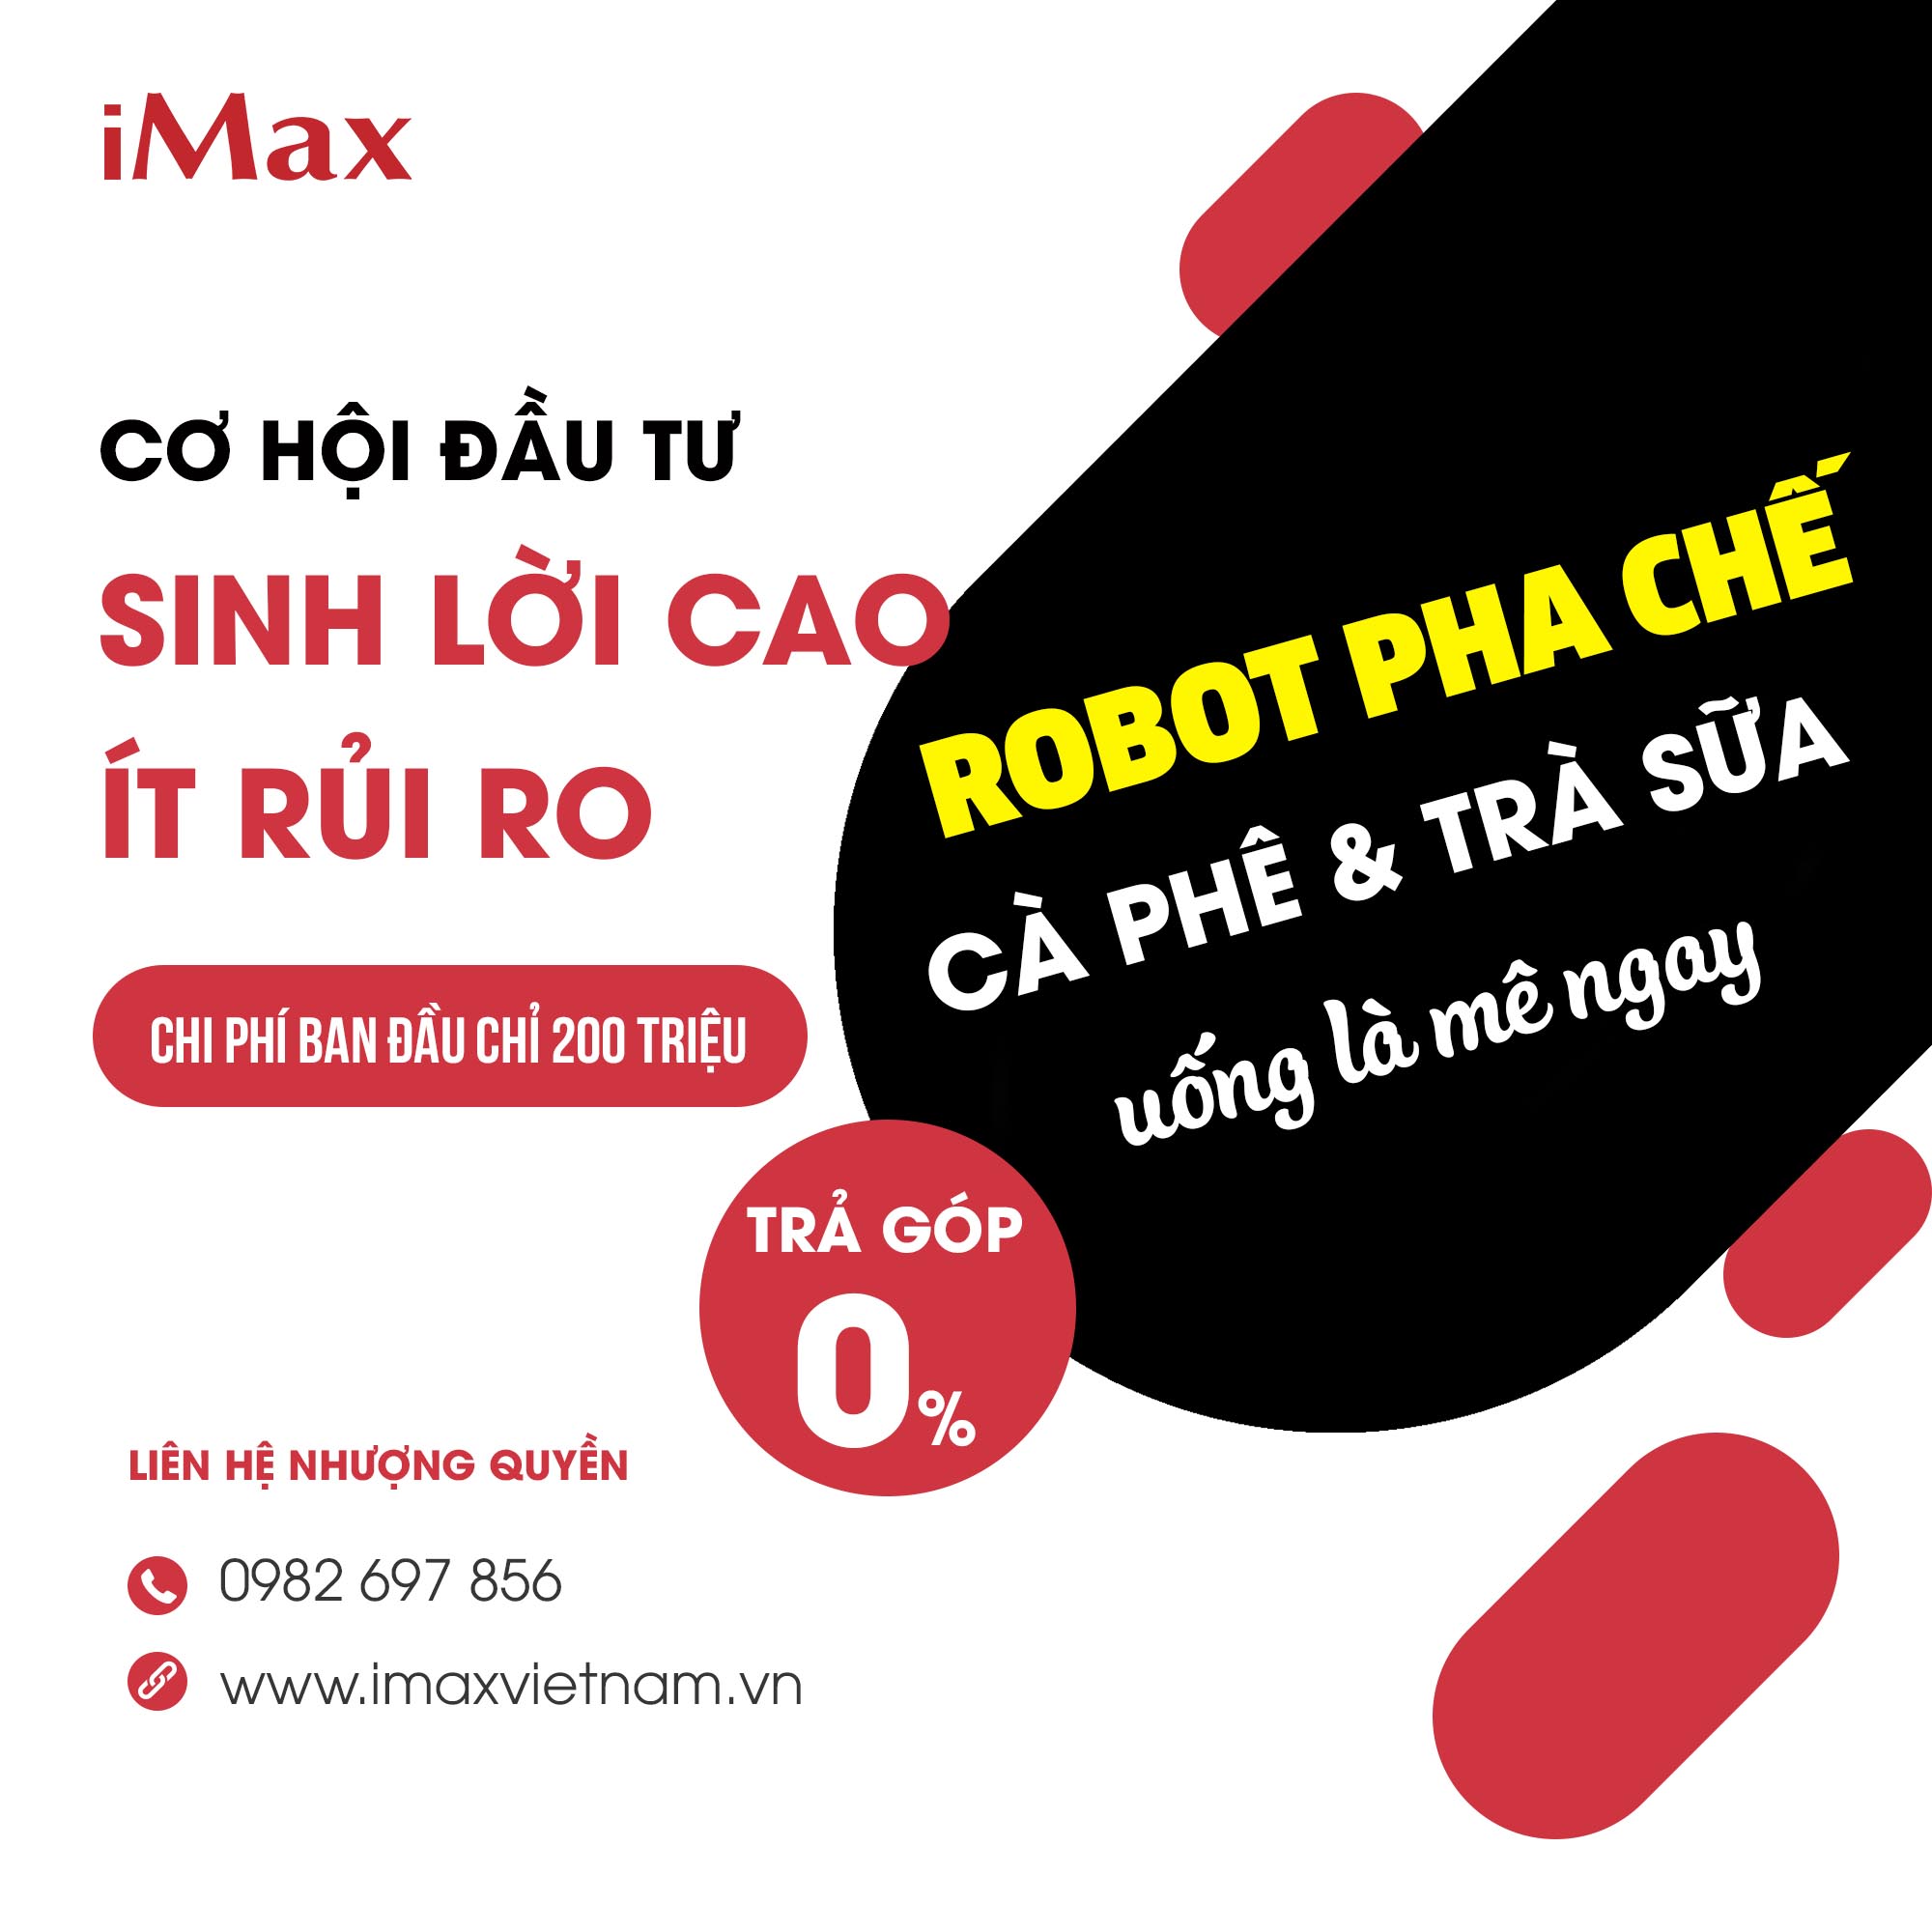 IMAX - Robot Pha Chế 1